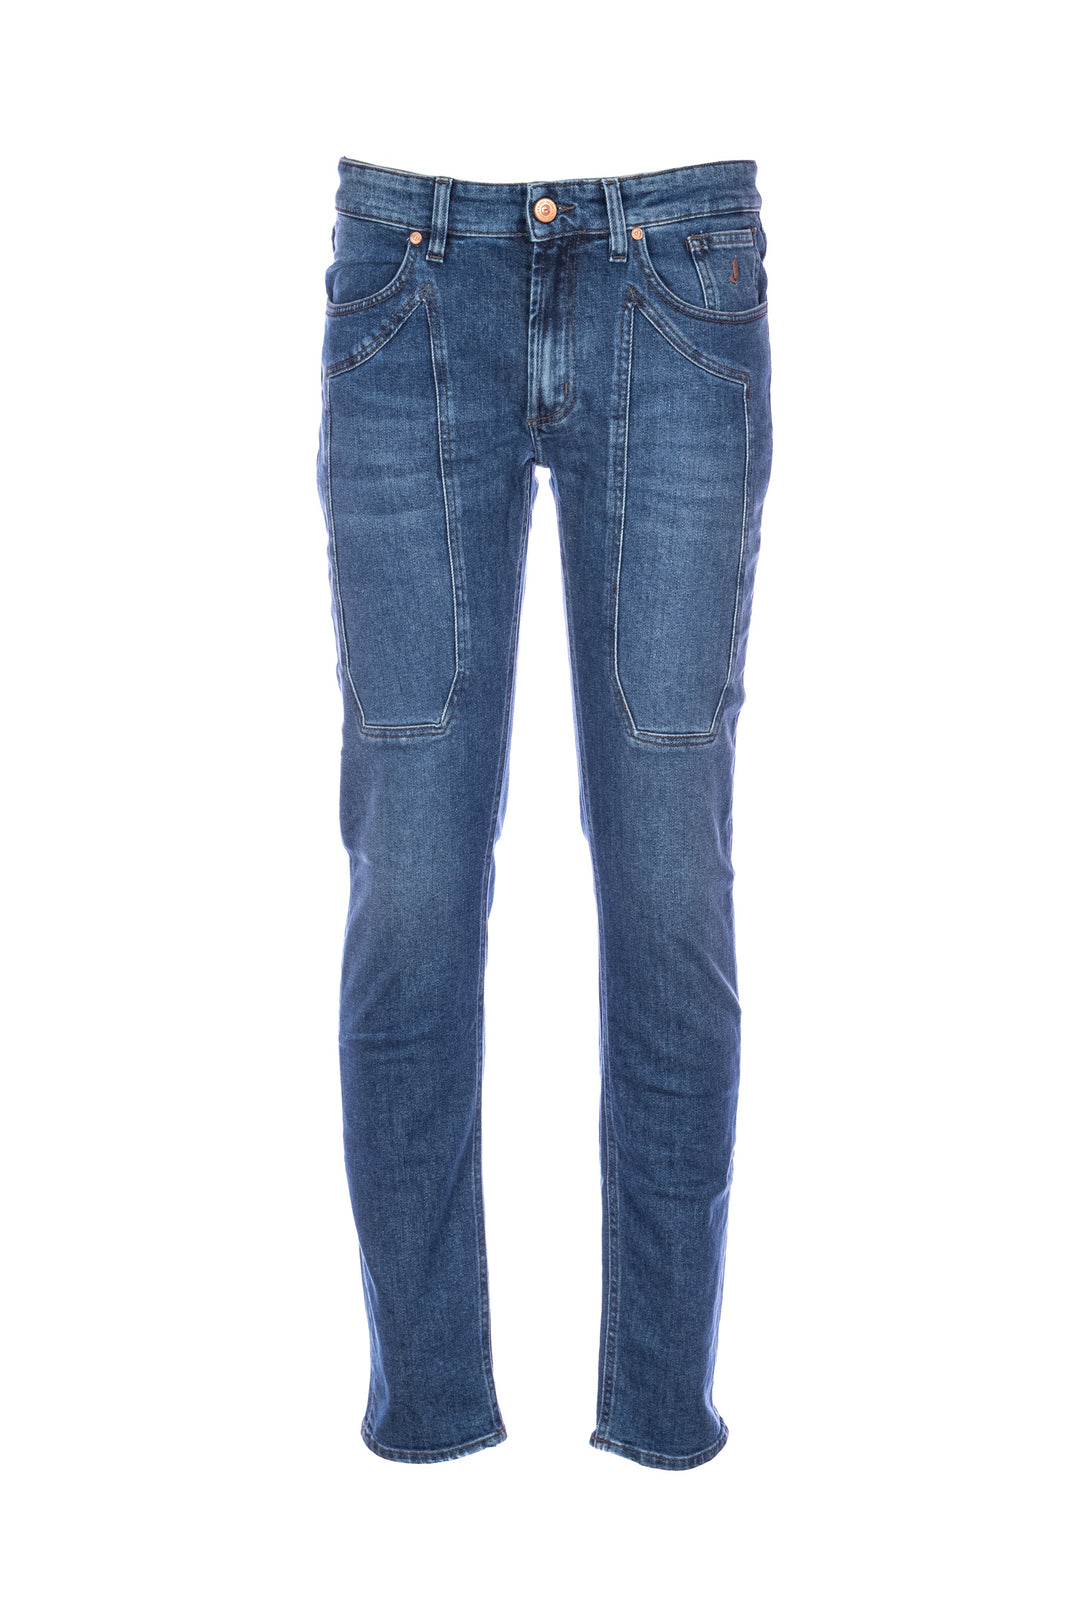 JECKERSON Jeans slim 5 tasche “JOHN” in denim di cotone stretch lavaggio medio con toppe - Mancinelli 1954